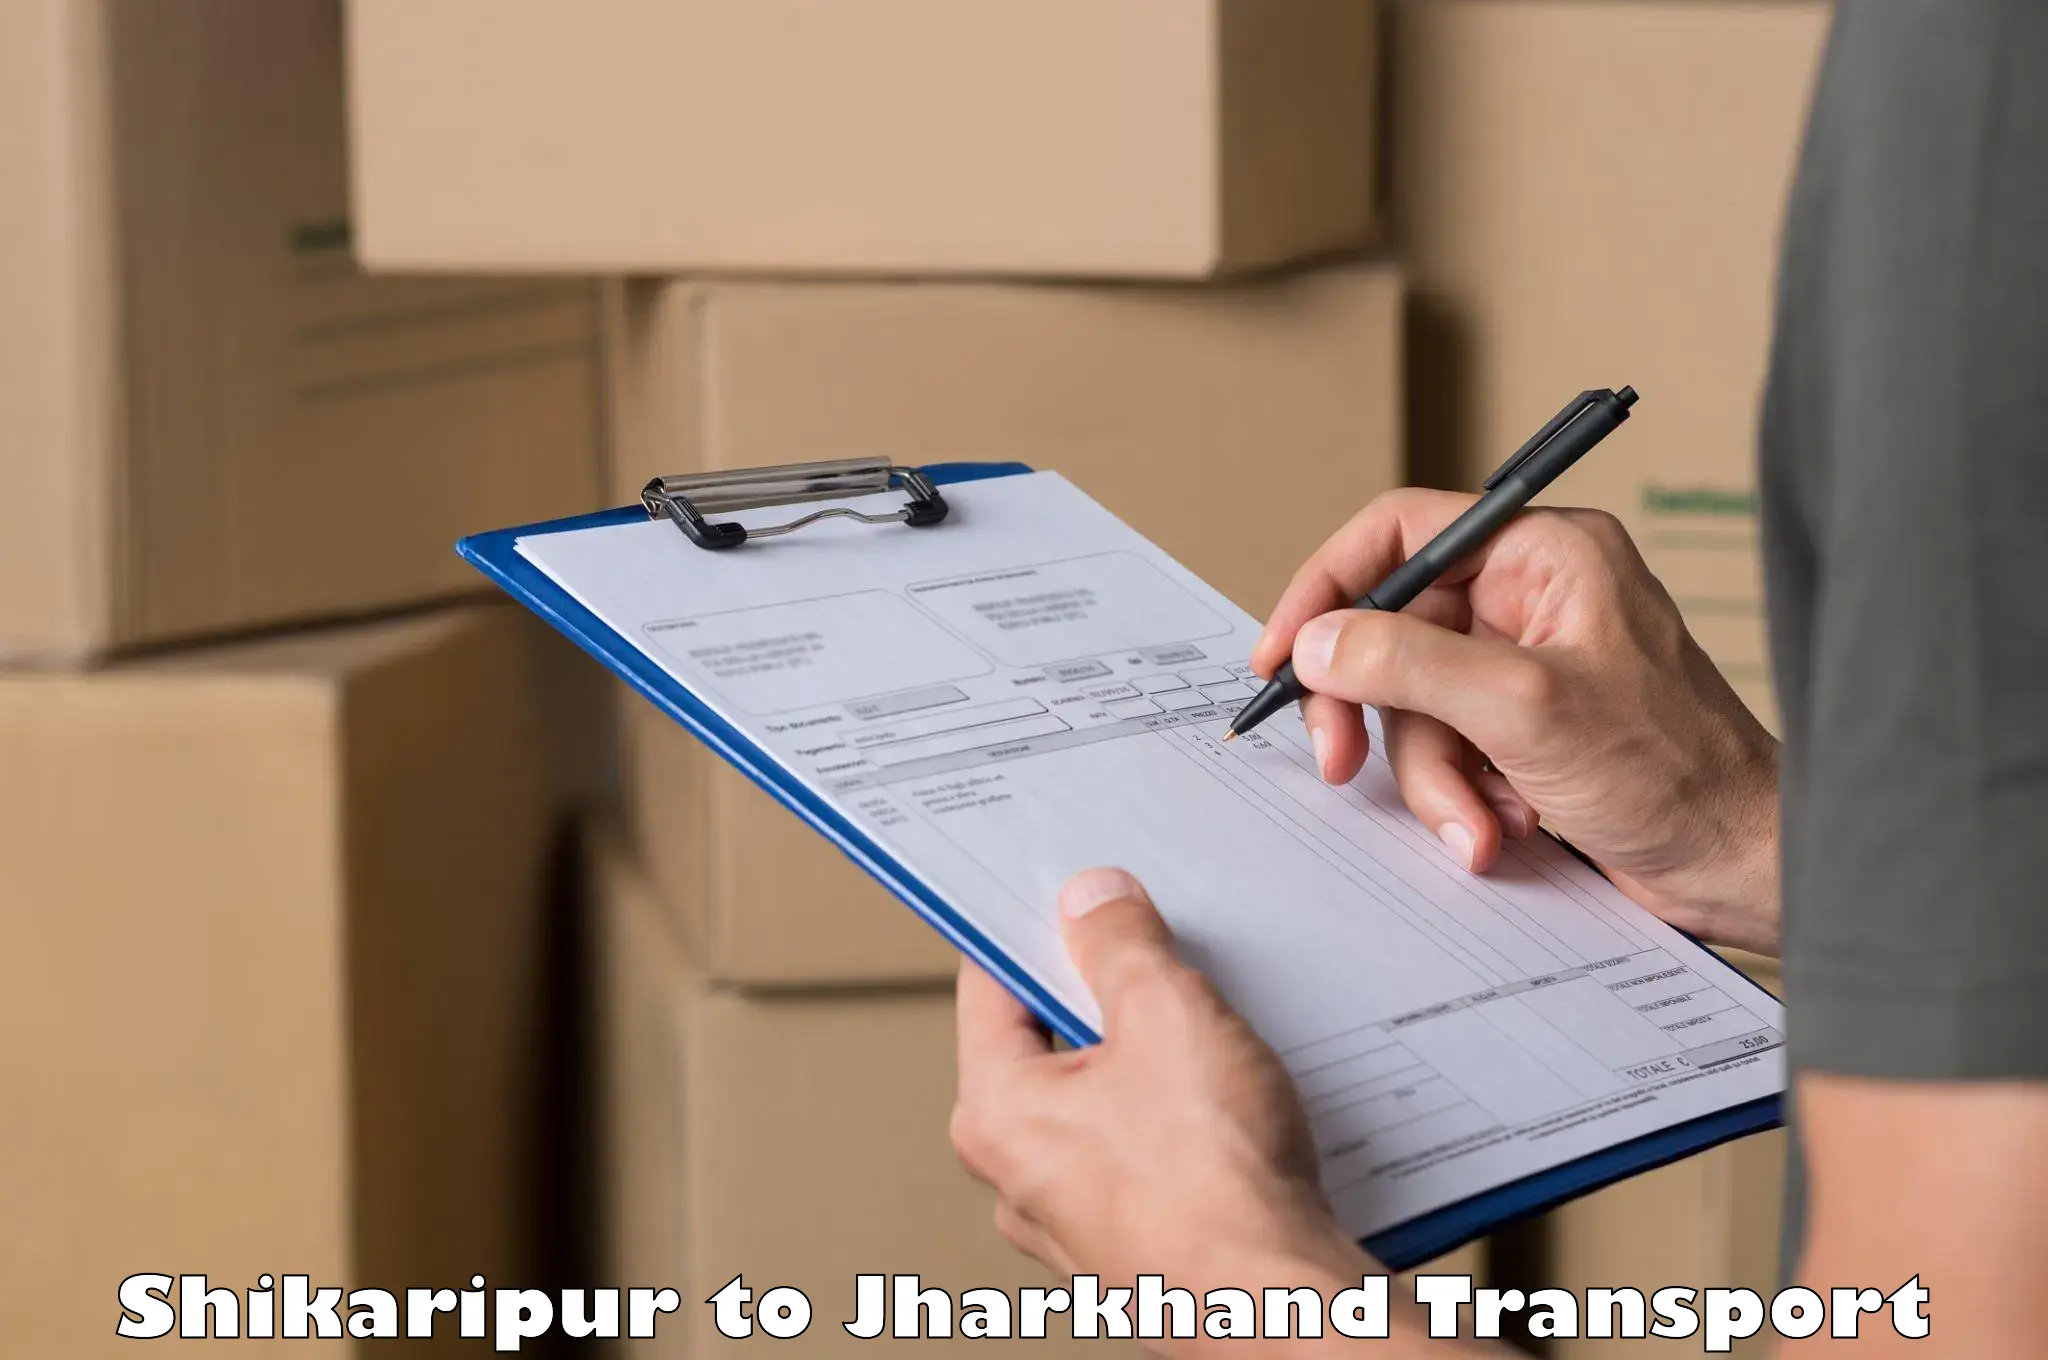 Cargo transportation services Shikaripur to Chakradharpur